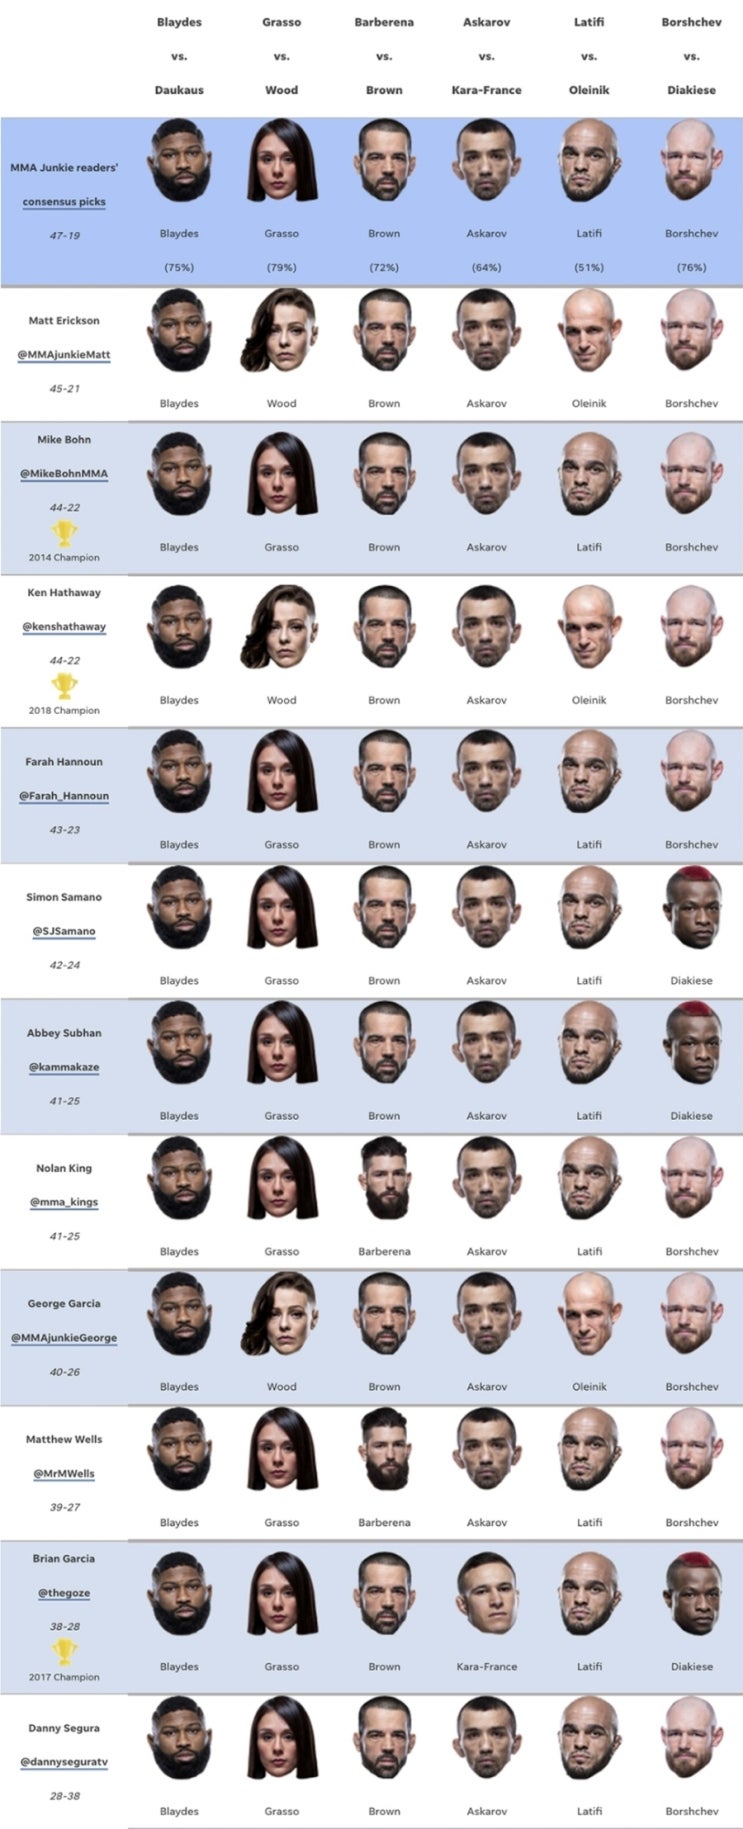 UFC 콜럼버스: 커티스 블레이즈 vs 크리스 다우카우스 미디어 예상과 배당률